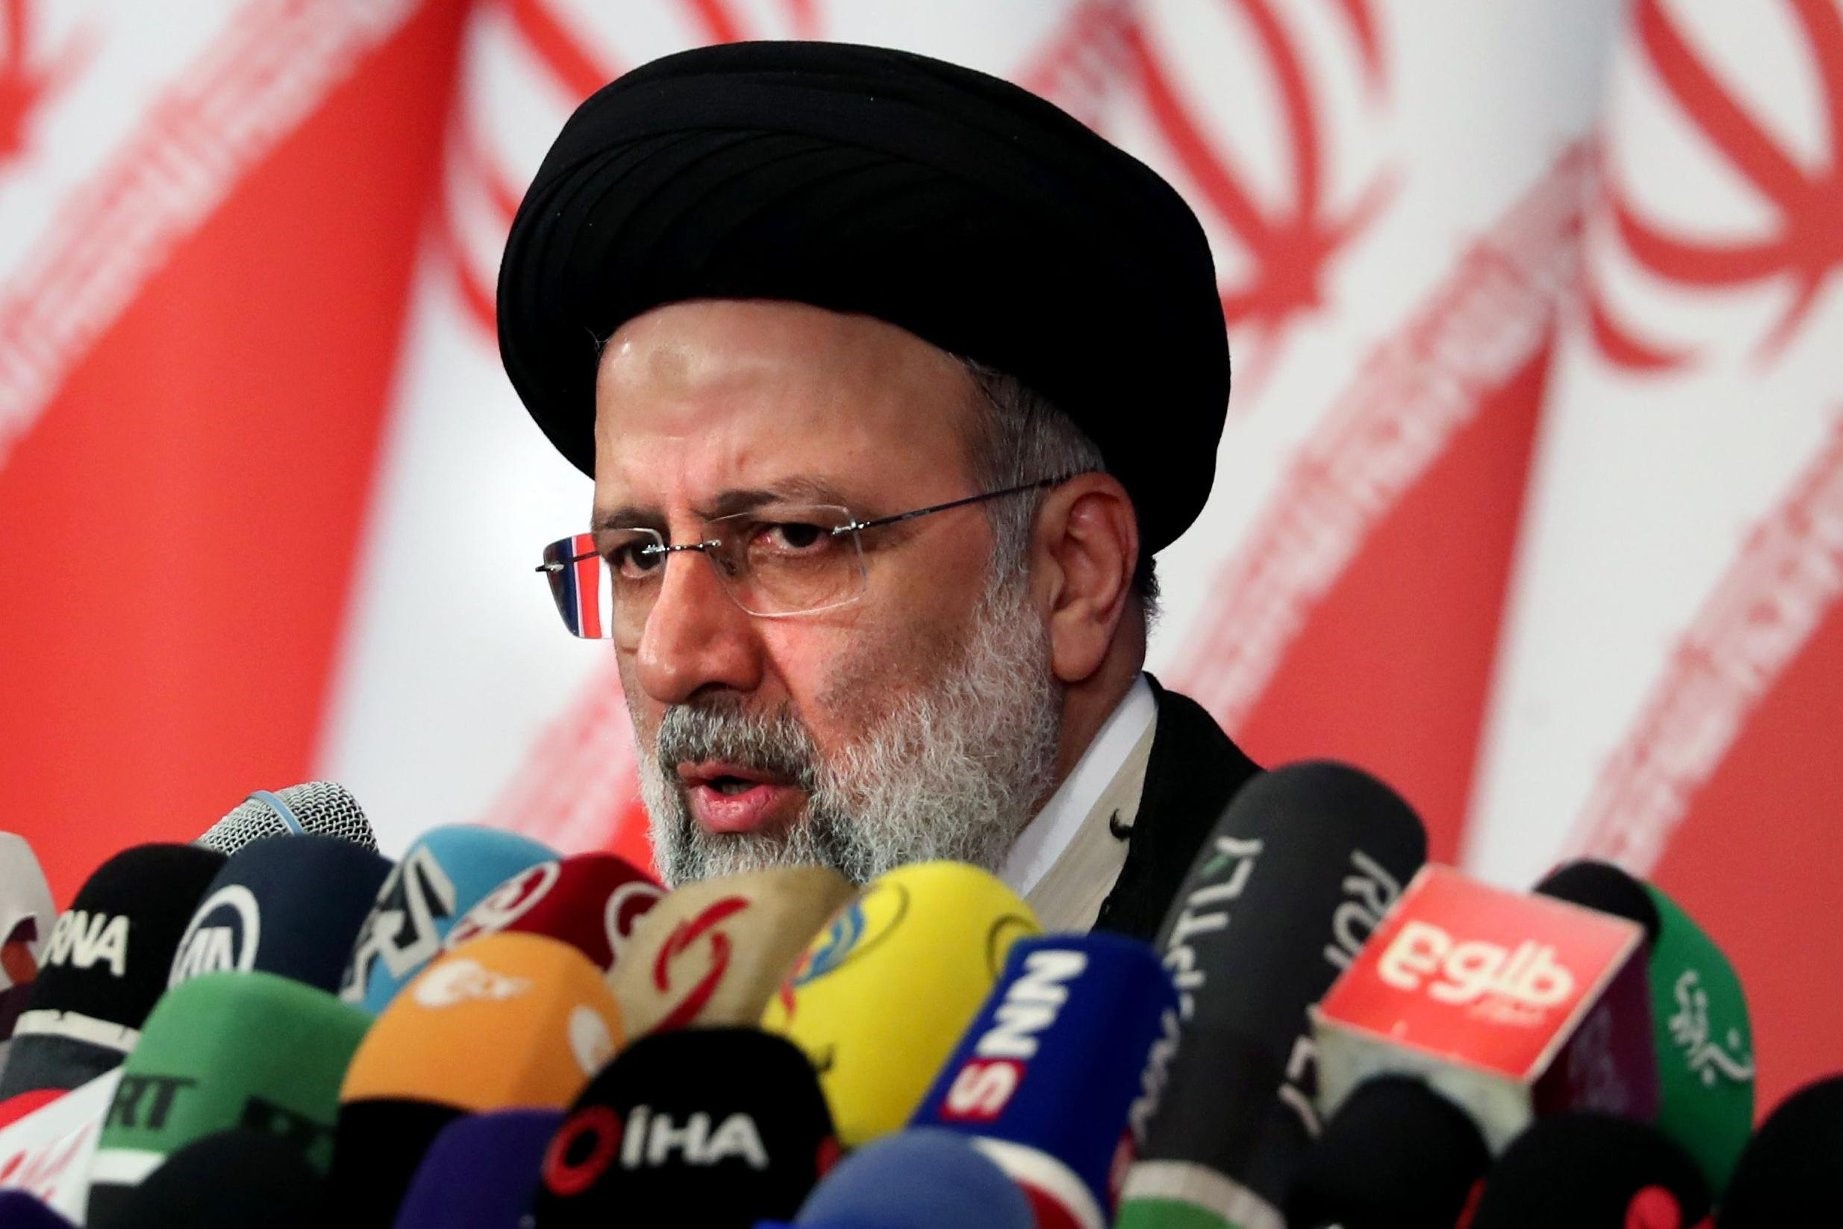 Tin thế giới - Tổng thống đắc cử Iran tỏ thái độ cứng rắn, từ chối gặp mặt người đồng cấp Mỹ 